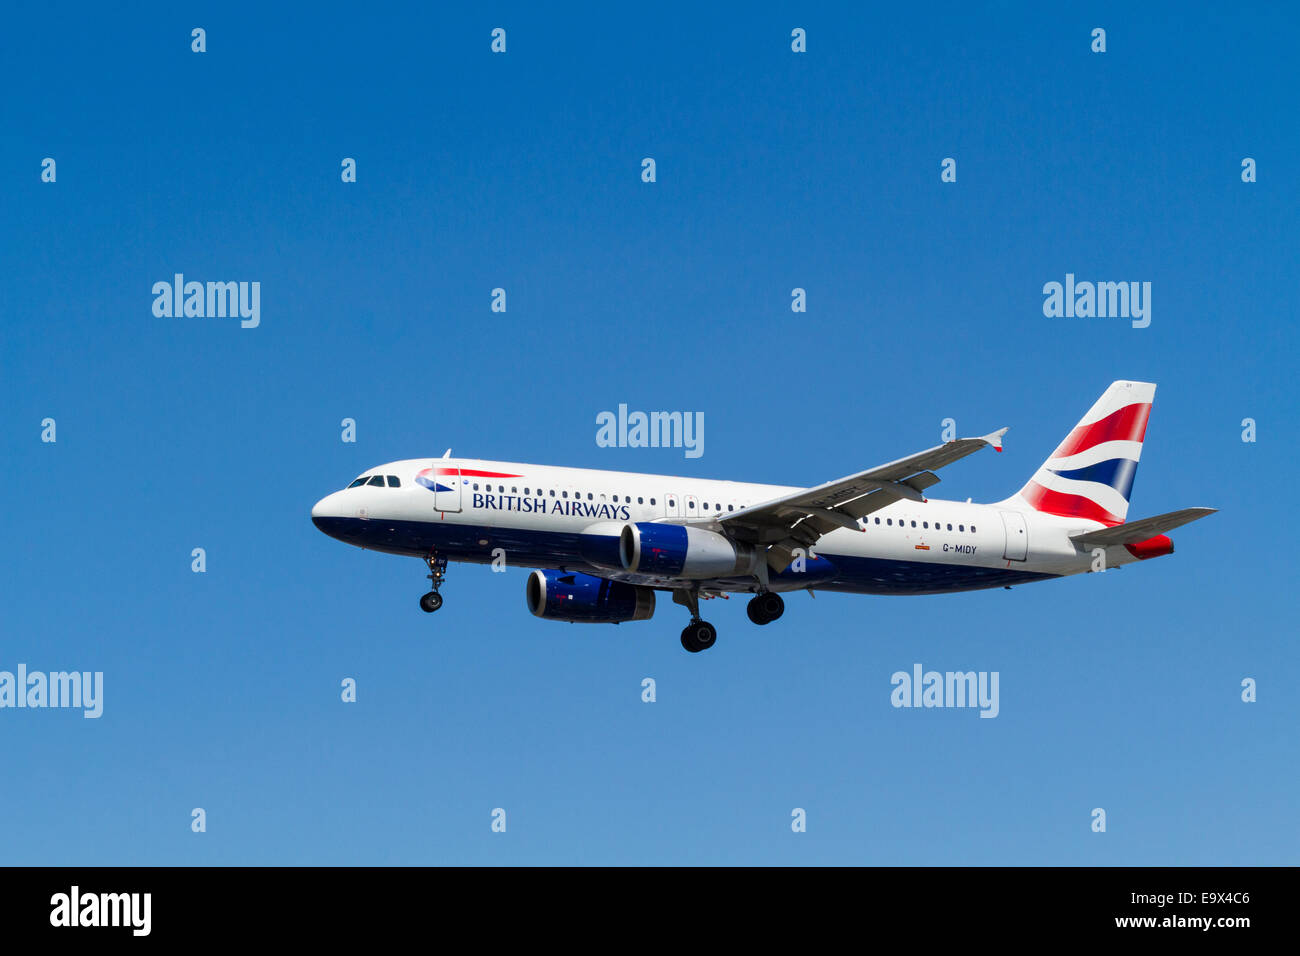 British Airways Airbus A320 avion, G-le théoreme sur approche à l'atterrissage à l'aéroport de Londres Heathrow, Angleterre, RU Banque D'Images